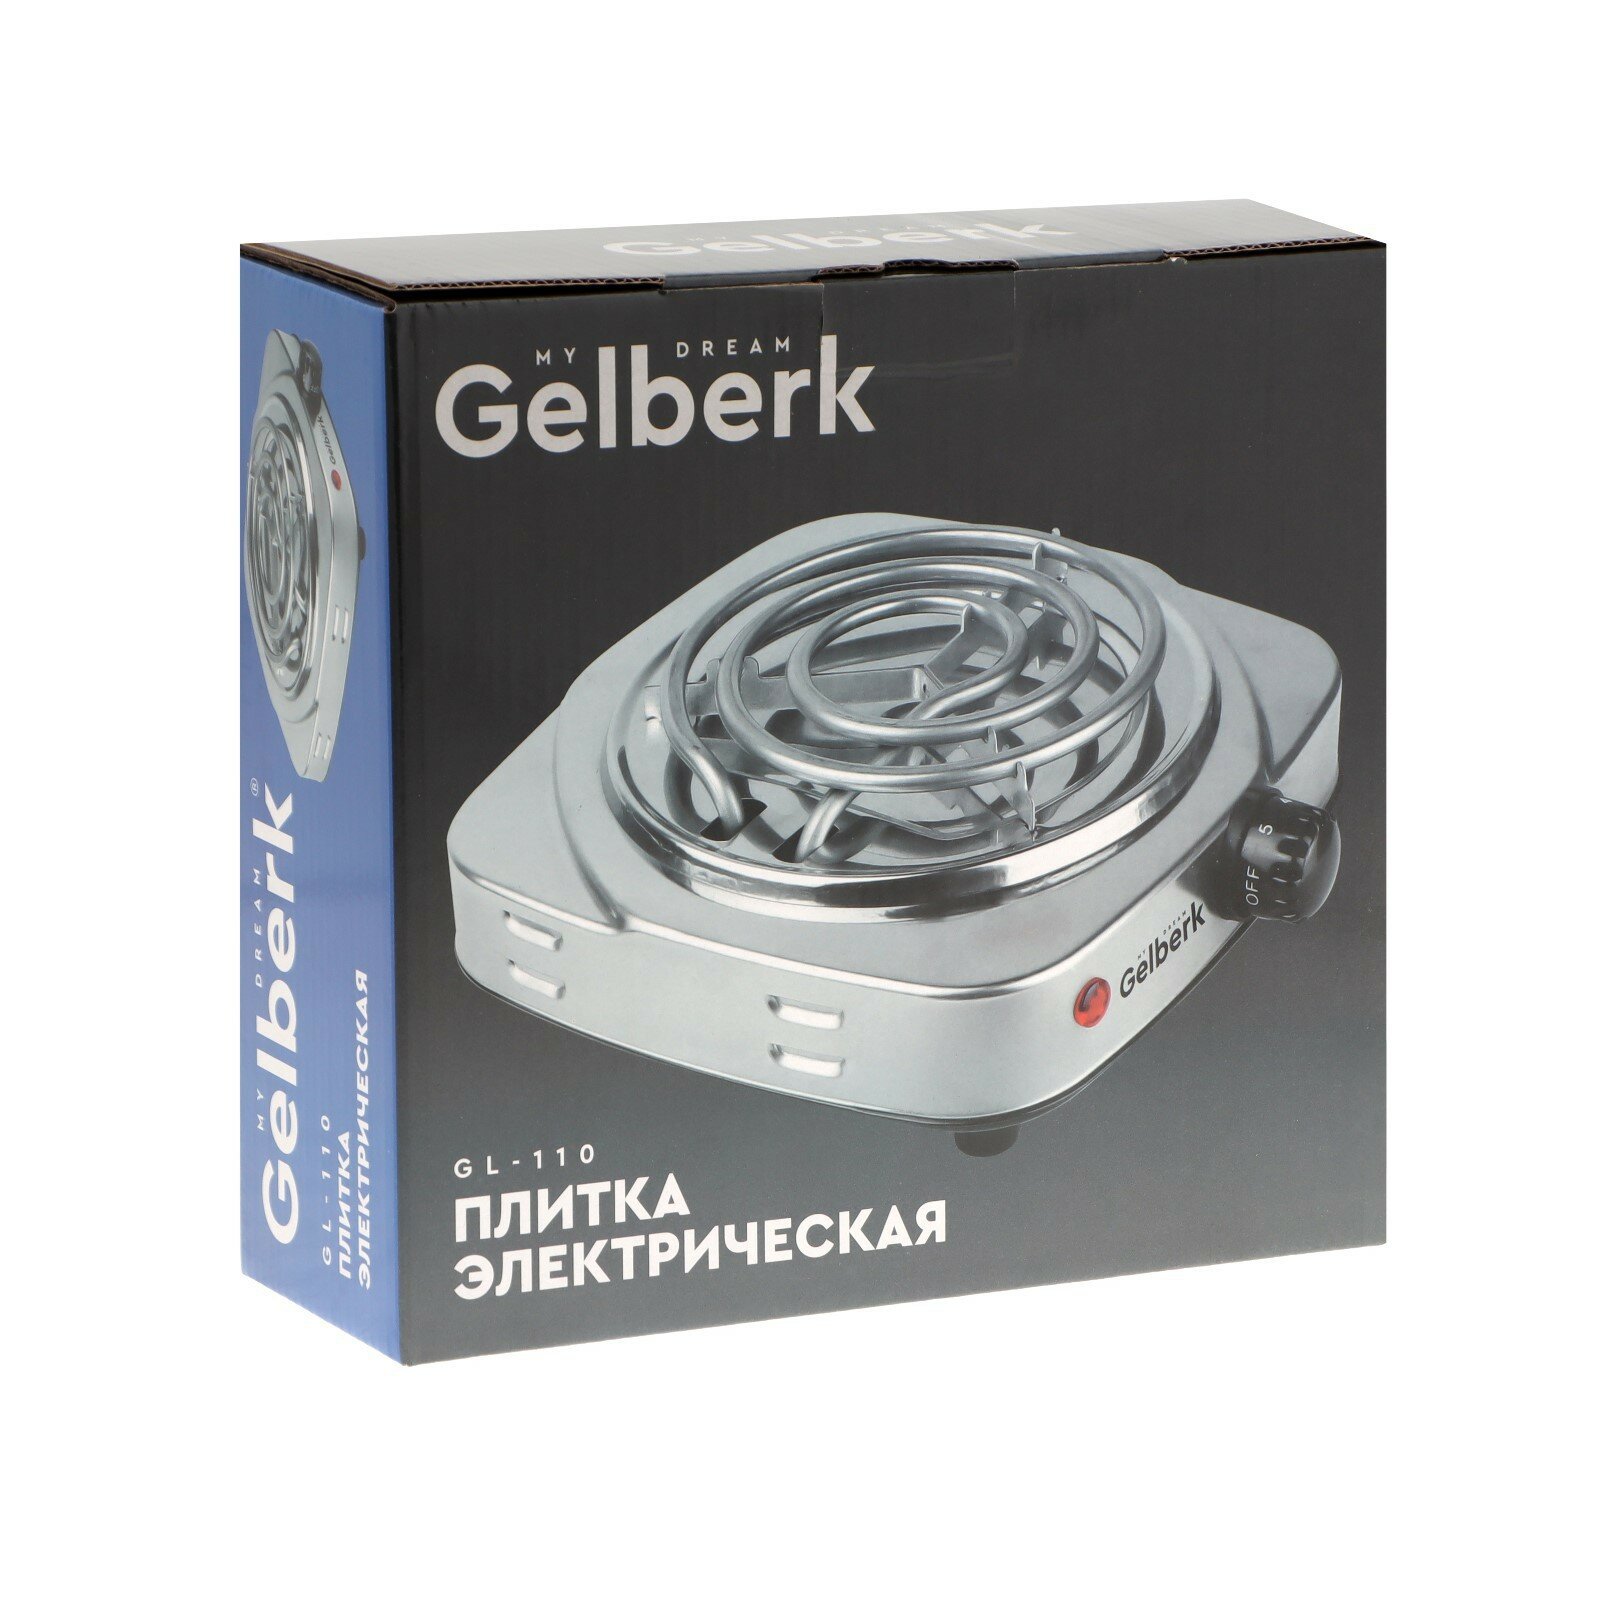 Электрическая настольная плита Gelberk - фото №19